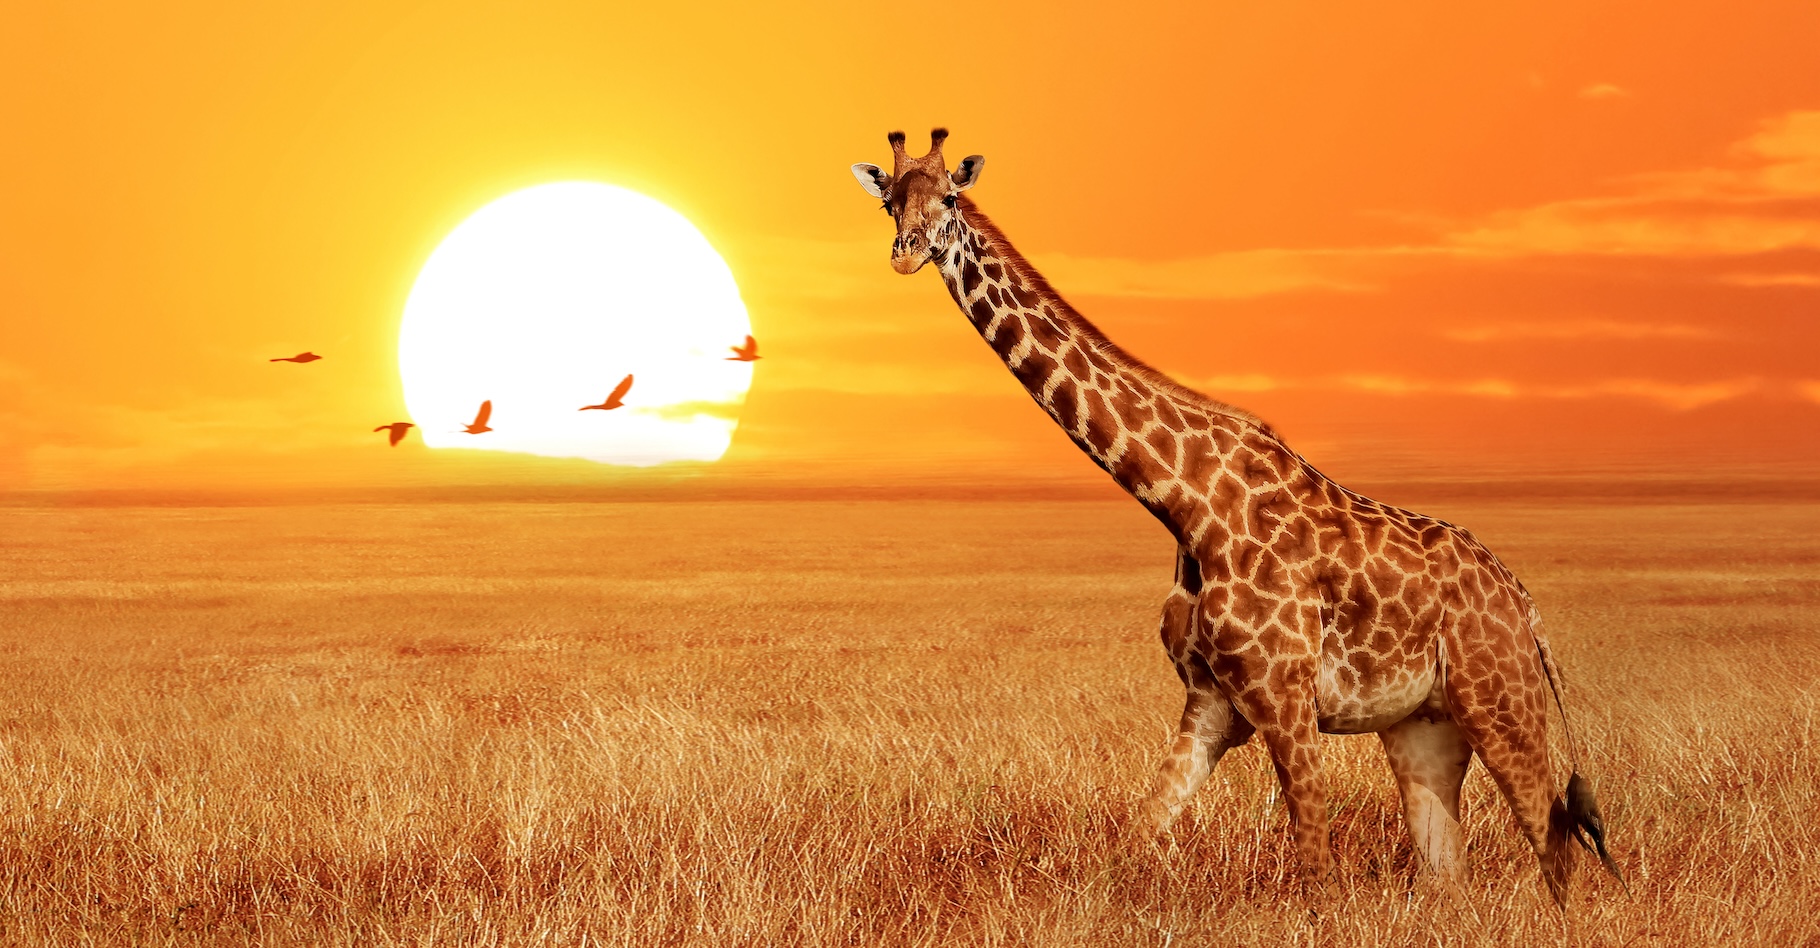 Une blogueuse a partagé la photo d’une girafe – ici, pour illustration, une girafe en pleine santé – présentant un cou en zigzag. © delbars, Adobe Stock